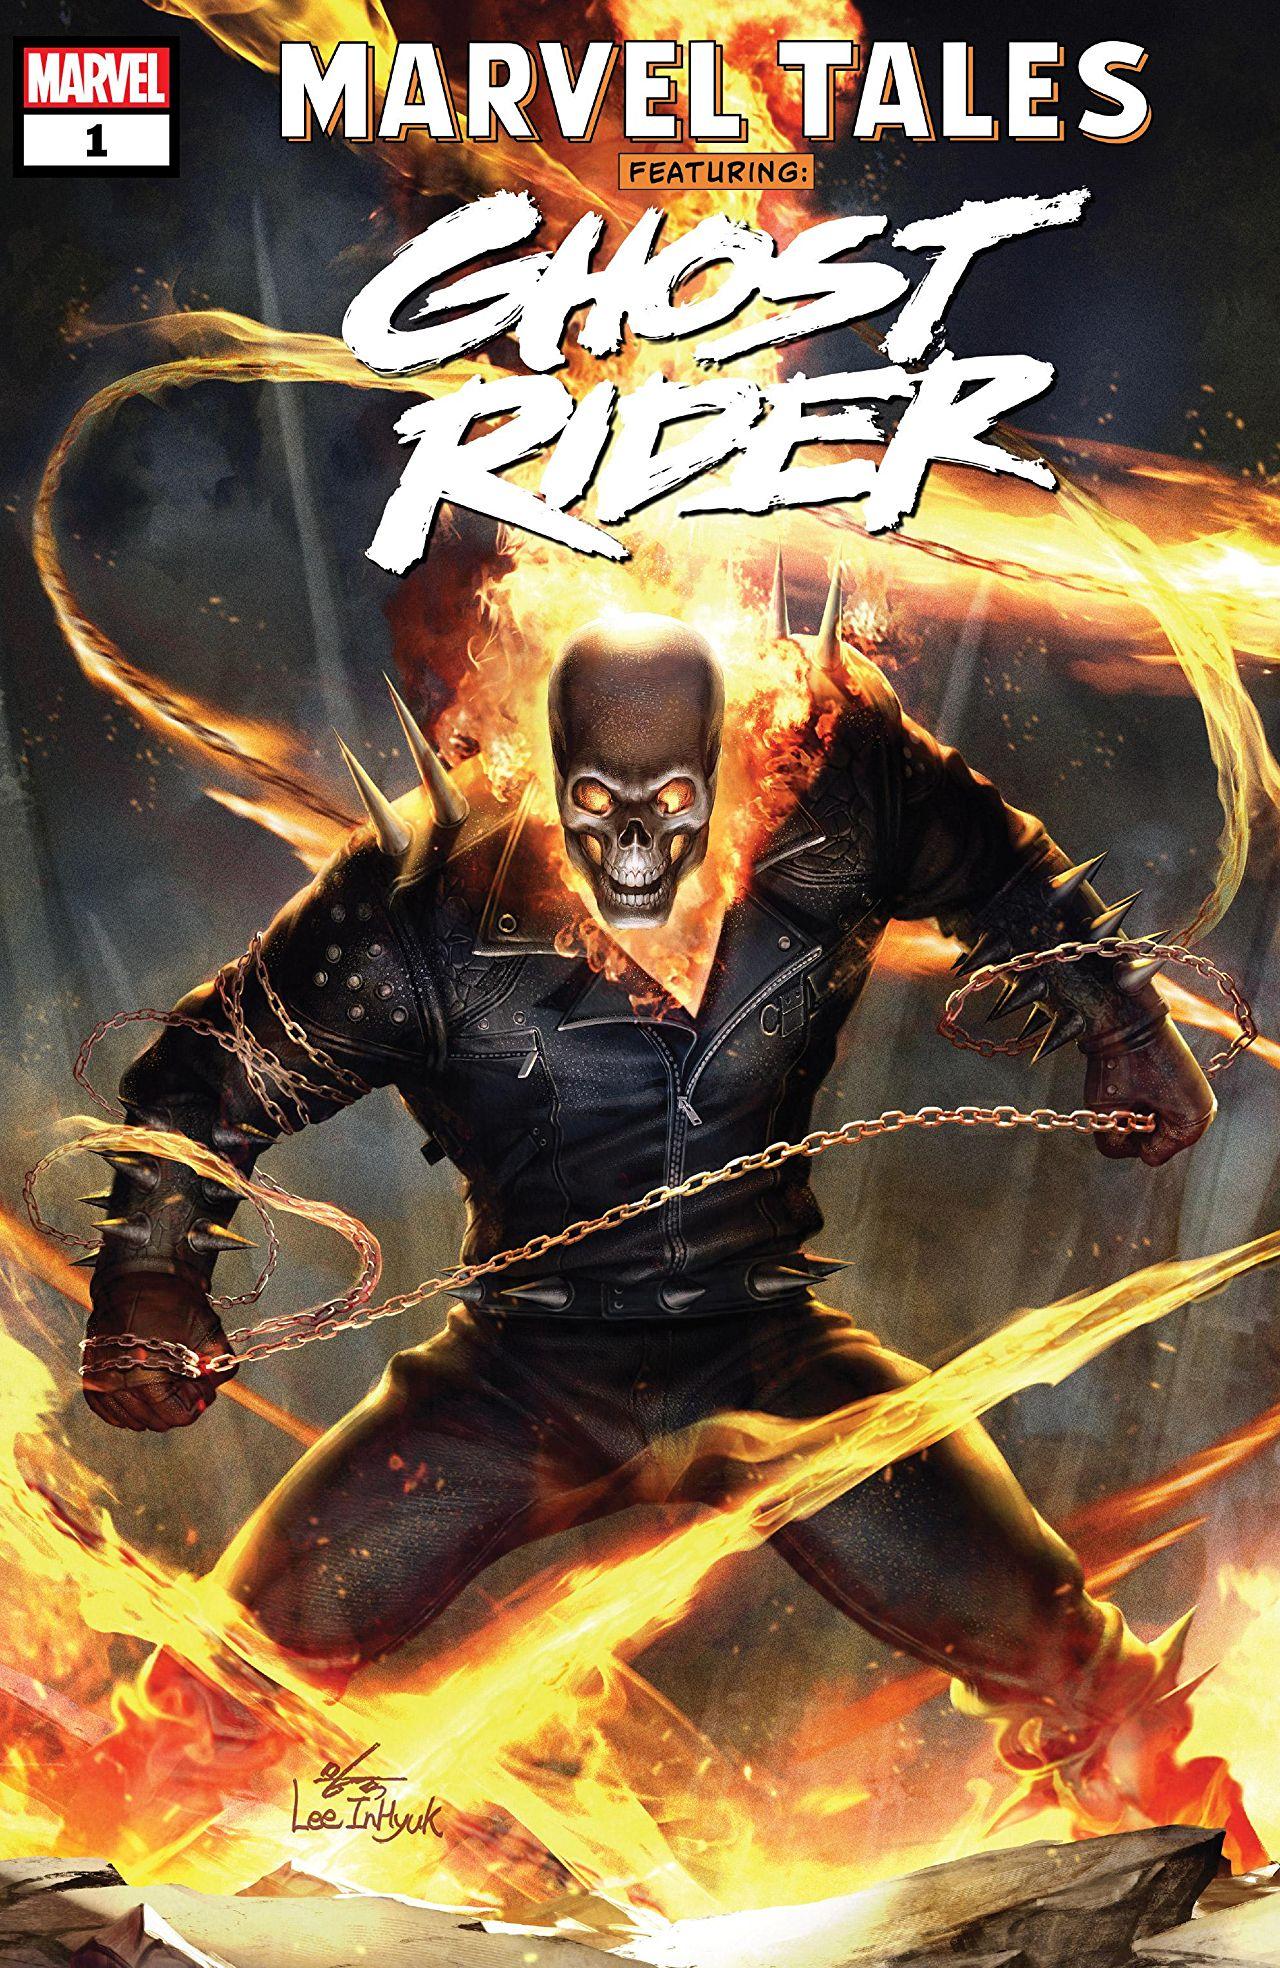 Marvel Tales: Ghost Rider Vol. 1 #1